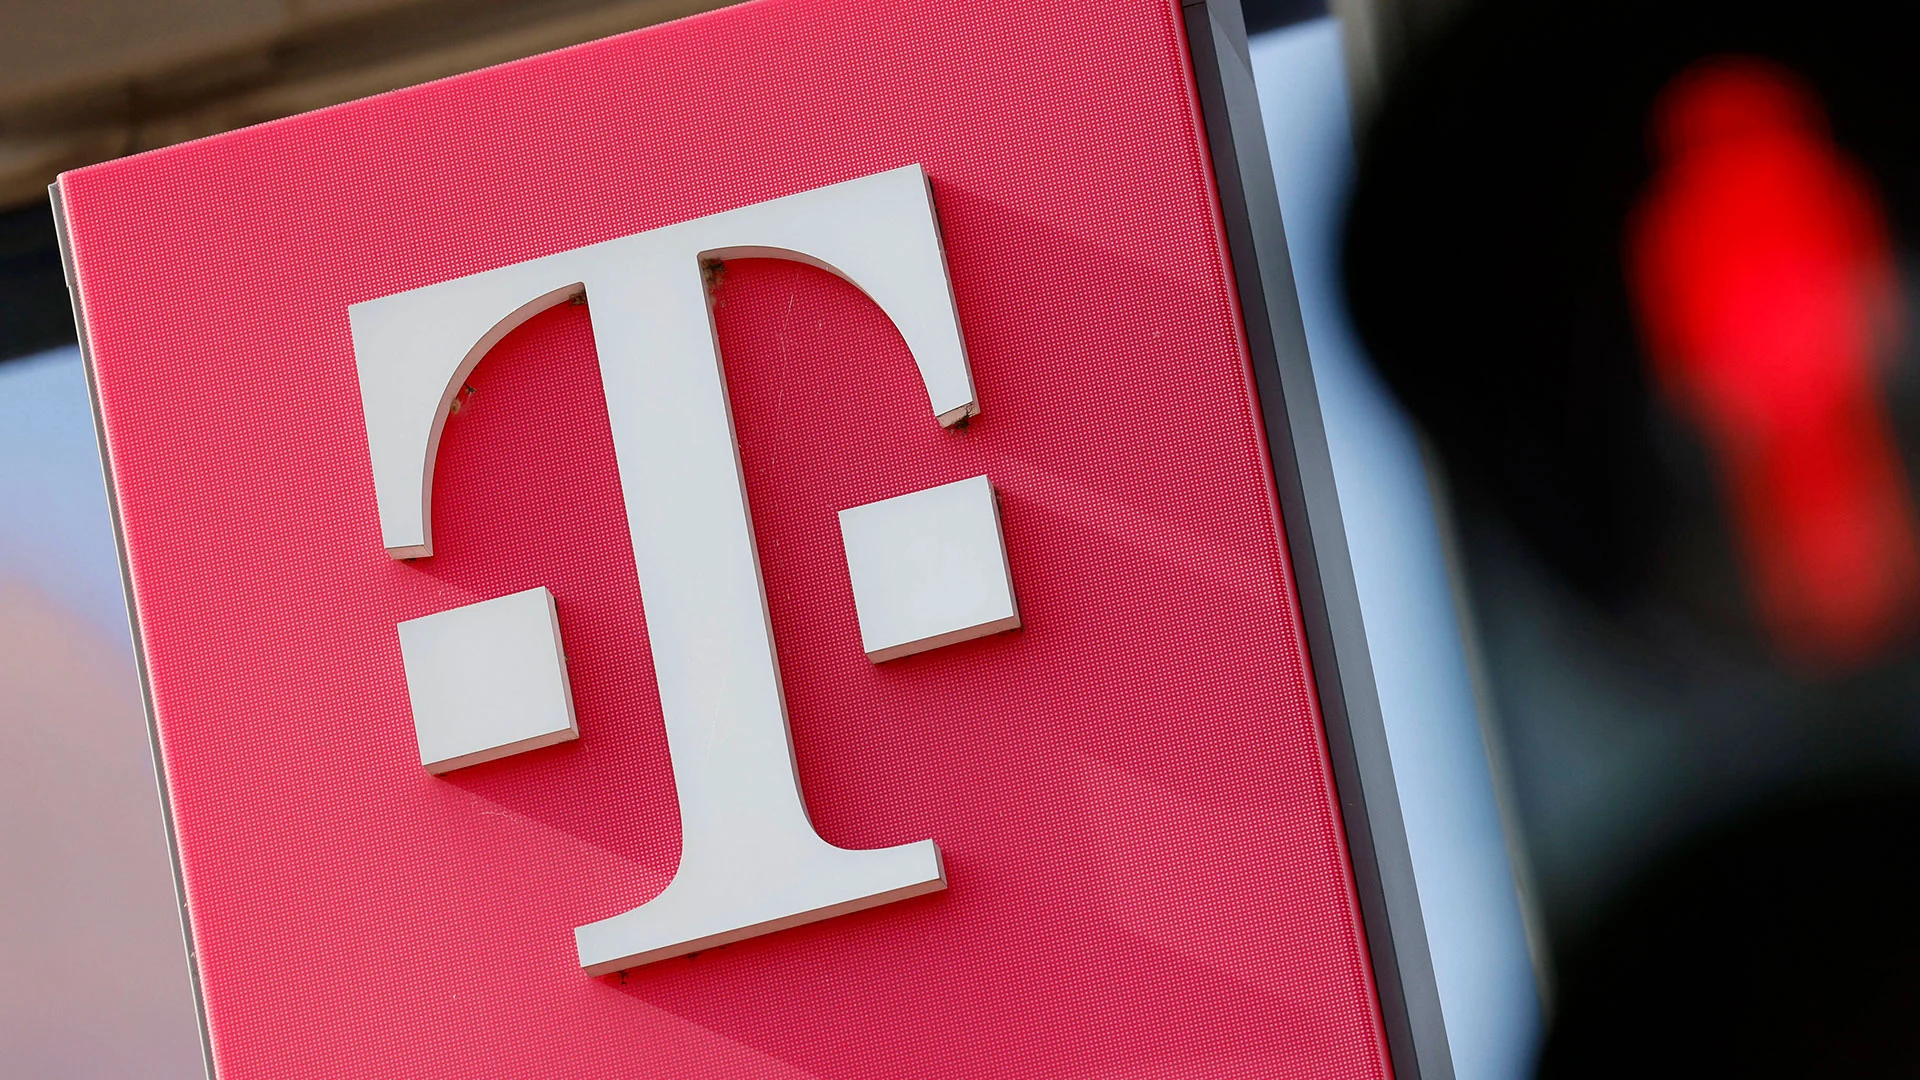 Deutsche Telekom Aktie: Nach diesen Quartalszahlen bei der Dividendenperle zuschlagen? (Foto: Panama-Pictures/IMAGO)